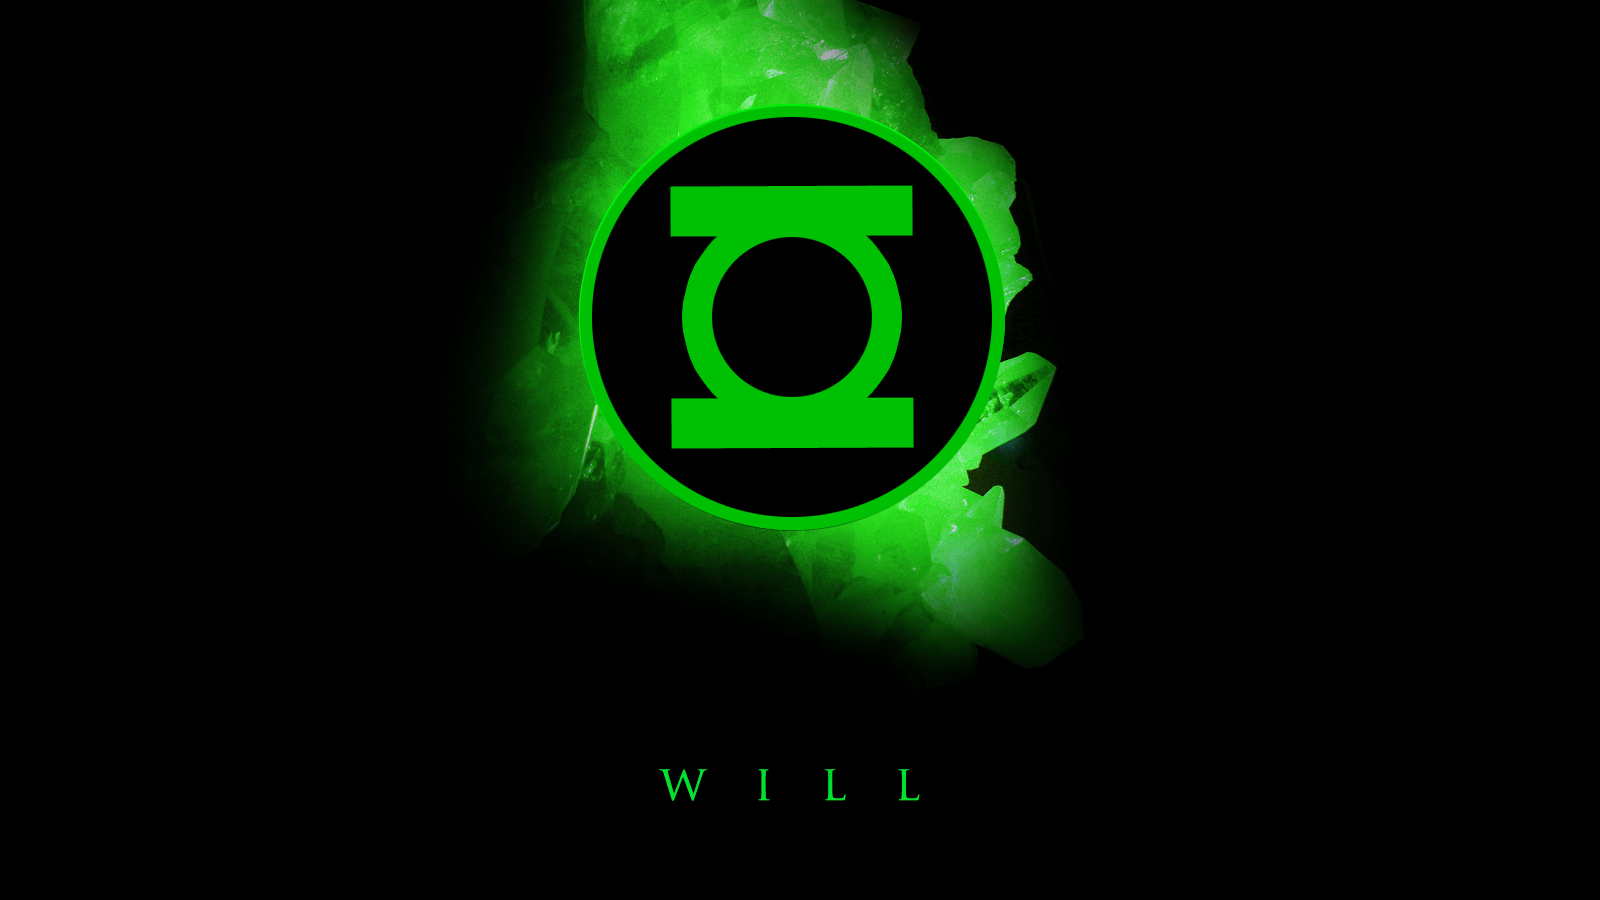 Cool Green Logo - Cool Green Lantern Symbol Wallpaper